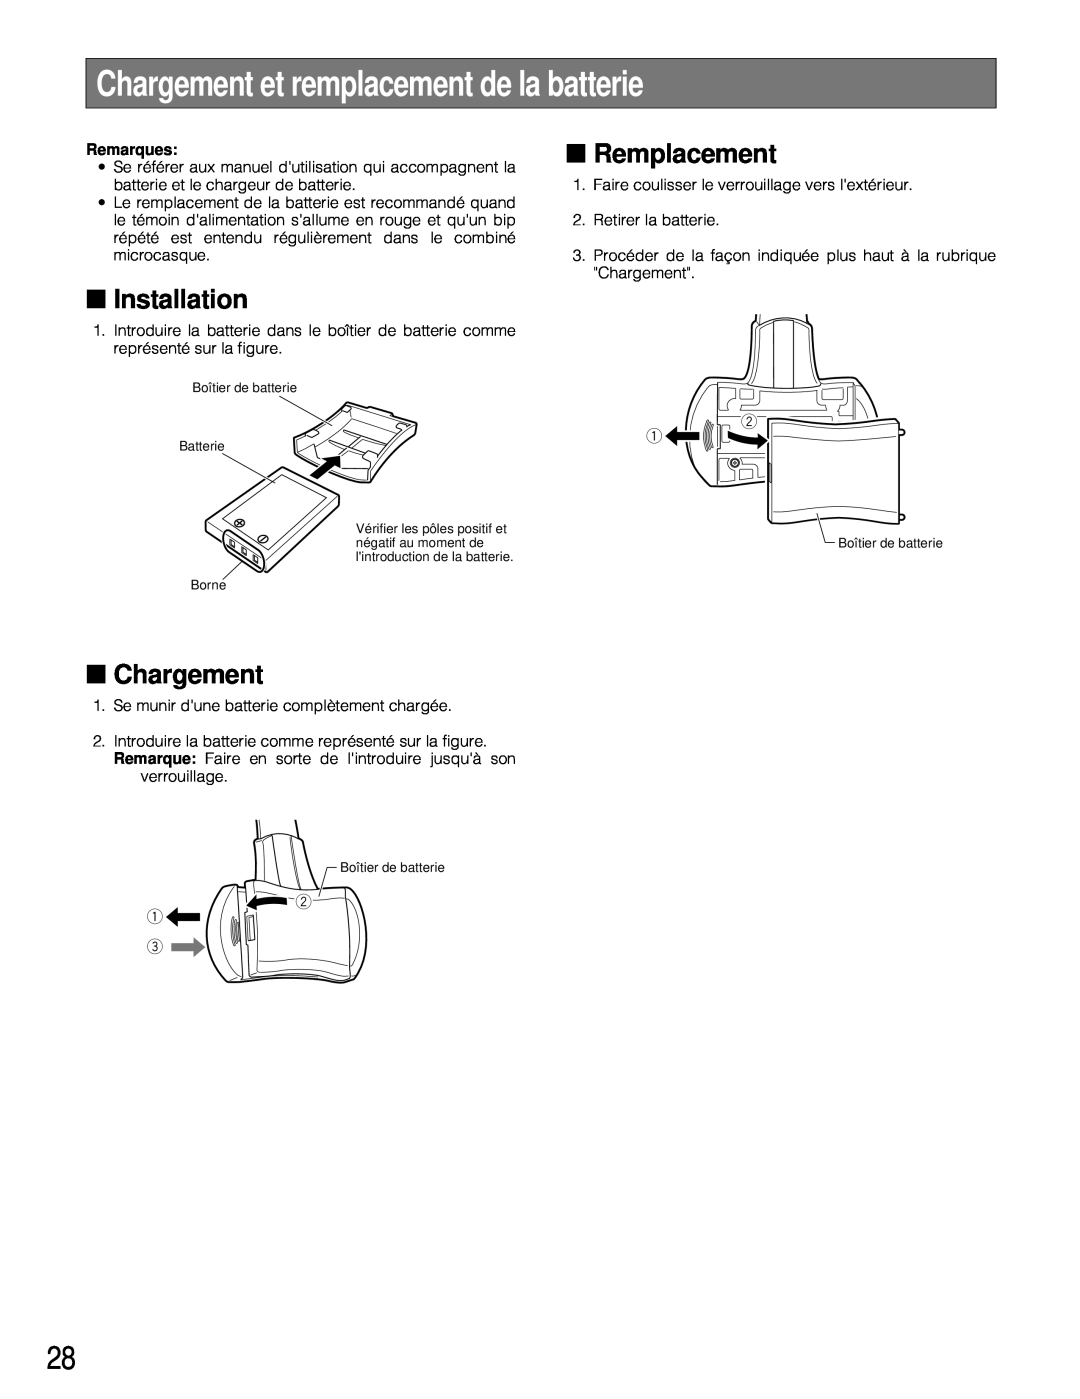 Technics WX-H3050 manual Chargement et remplacement de la batterie, Remplacement, Installation 